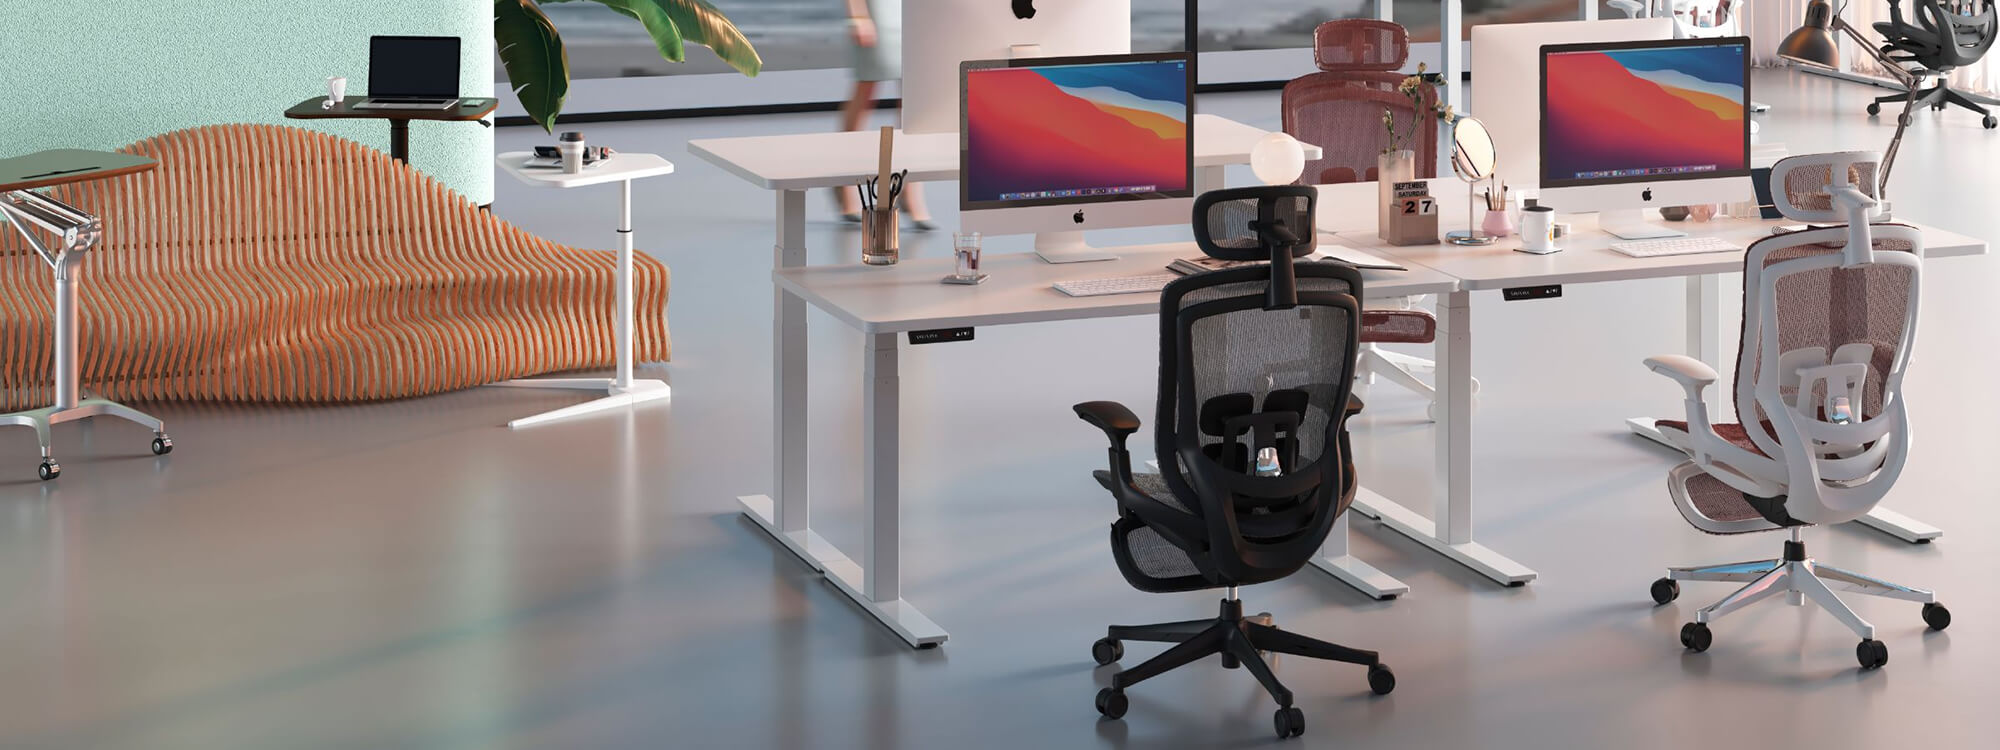 Las estaciones de trabajo para tres y dos personas en la oficina tienen cinco sillas de oficina negras.